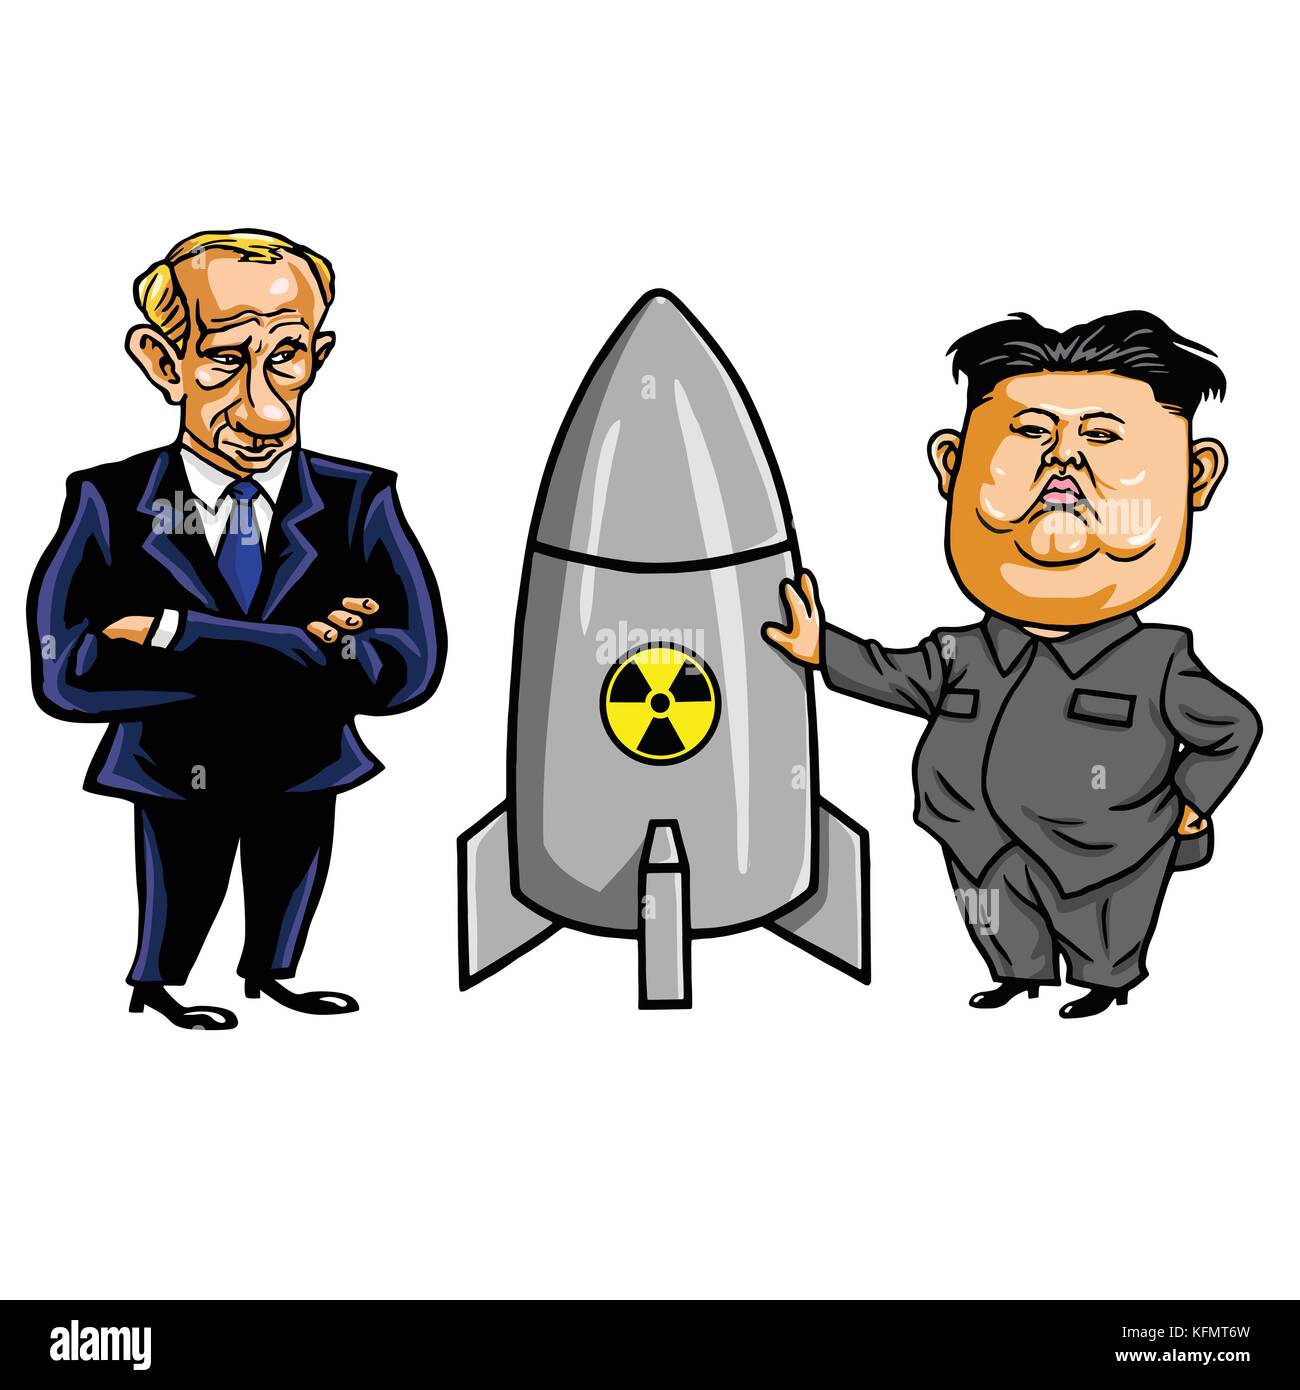 Kim Jong-un et l'arme nucléaire avec Vladimir Poutine. vector illustration cartoon. octobre 31, 2017 Illustration de Vecteur